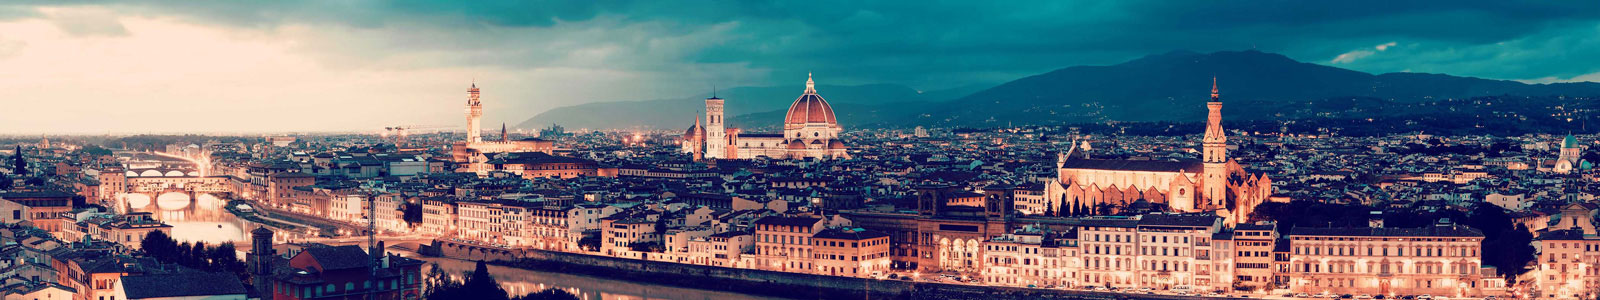 №4668 - Панорама вечерней Флоренции